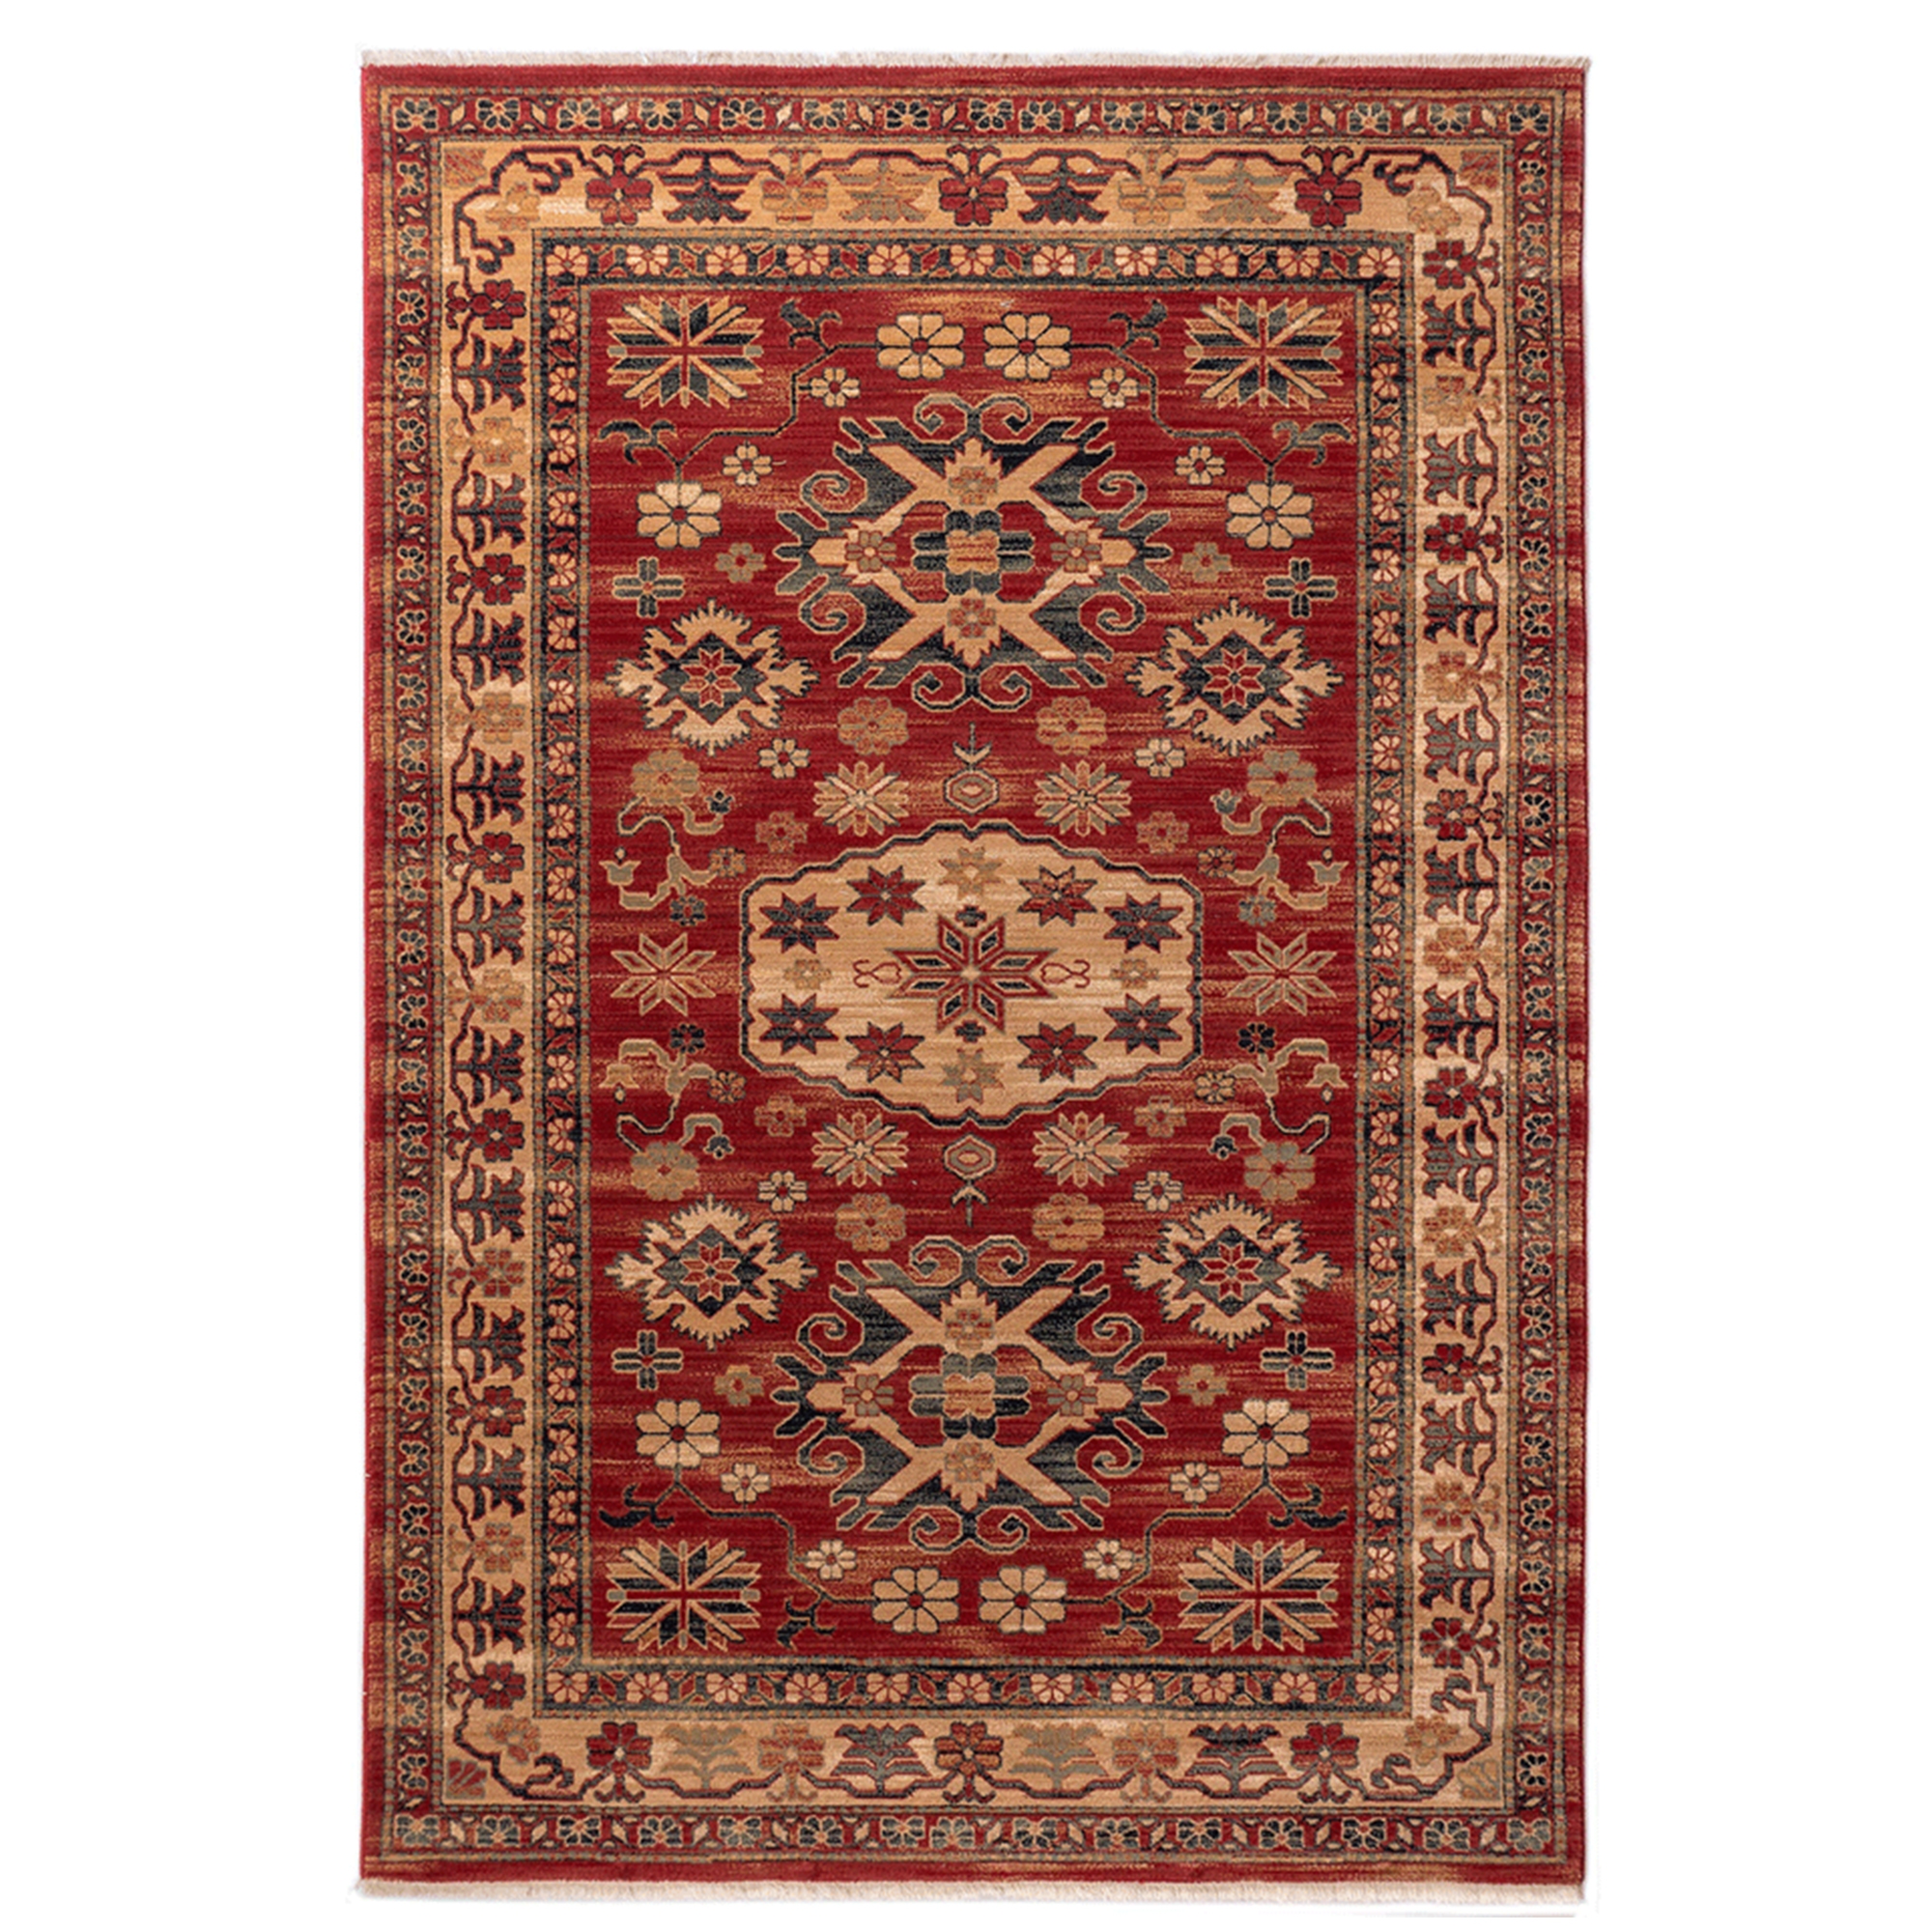 Covor living / dormitor Carpeta Antique 28561-53588, 120 x 145 cm, lana, bej + maro + rosu, dreptunghiular